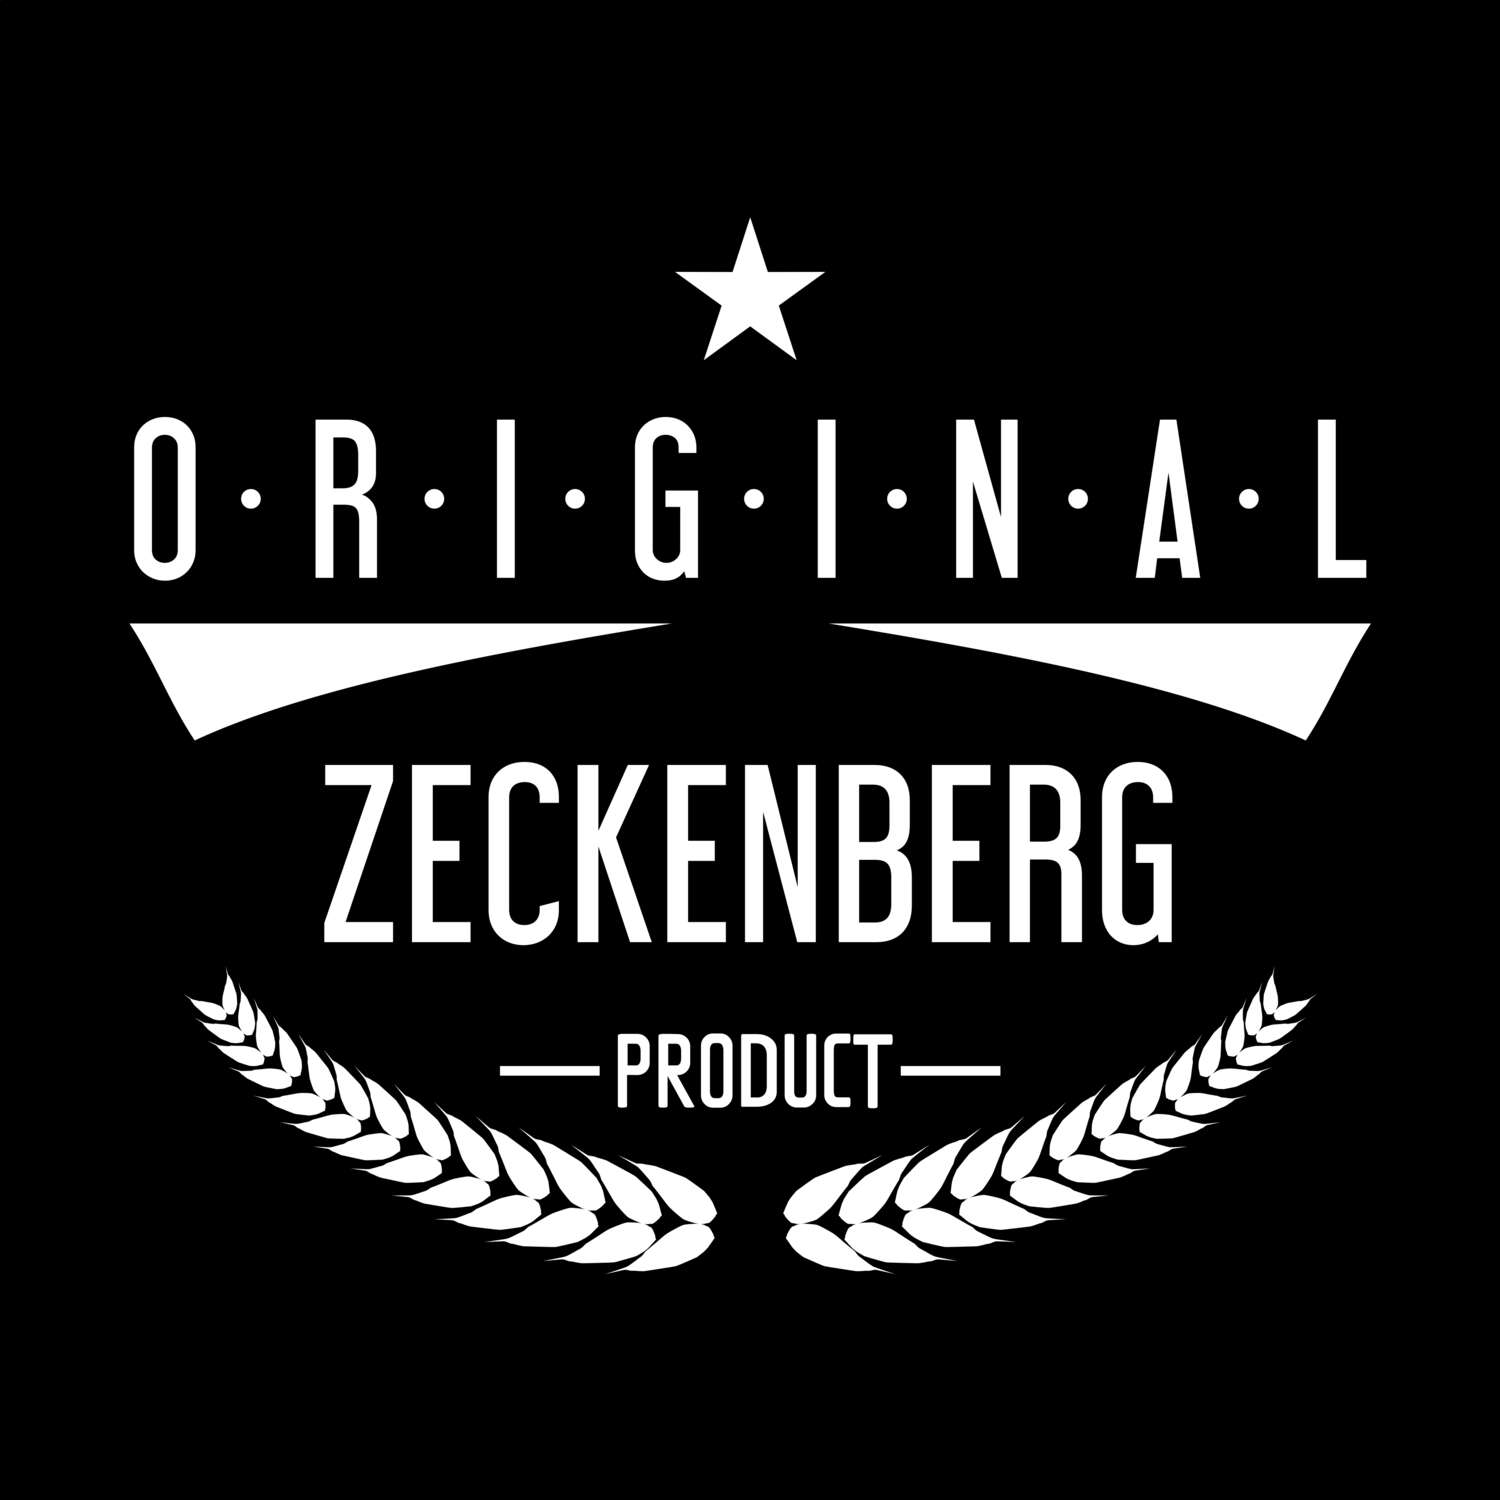 Zeckenberg T-Shirt »Original Product«